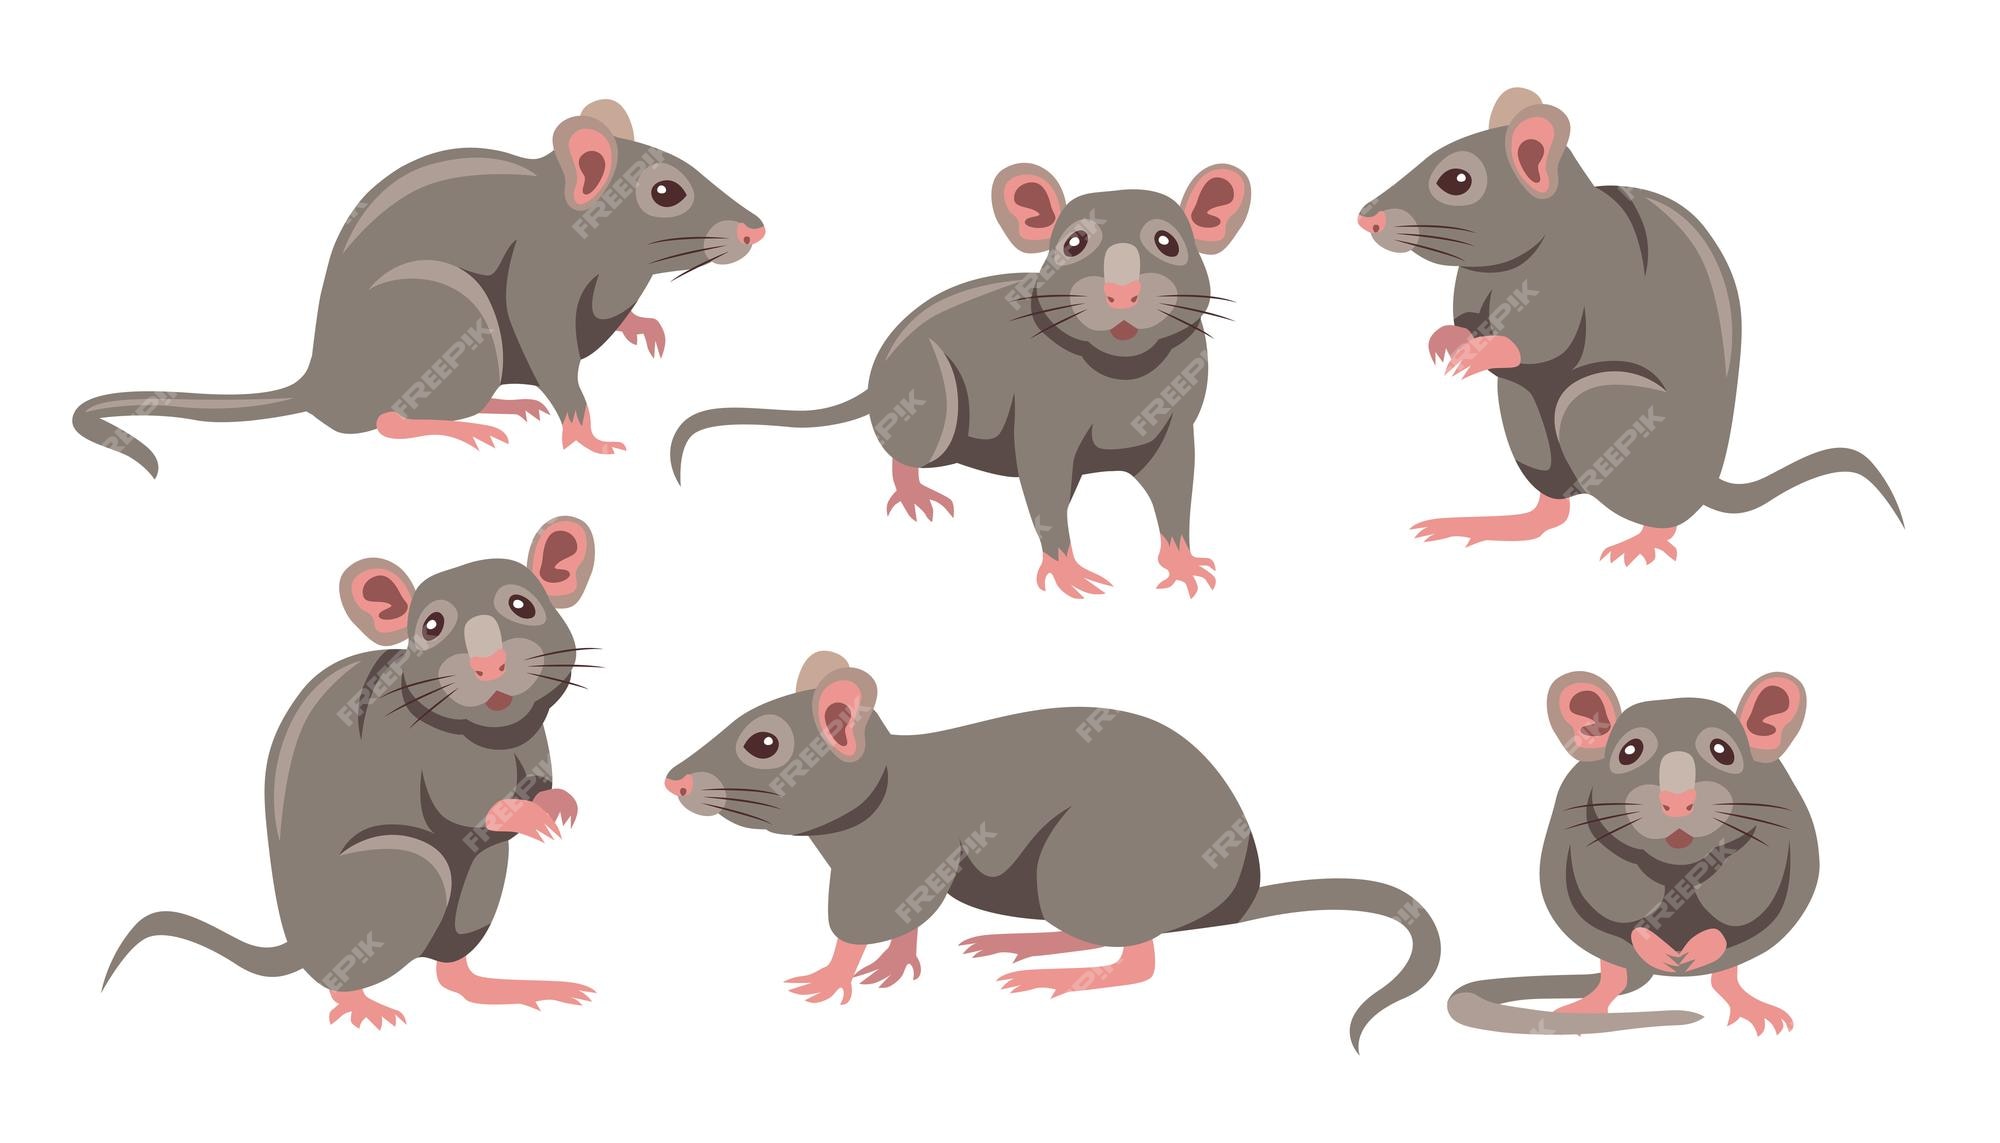 Rat Vectors & Illustrations for Free Download | Freepik